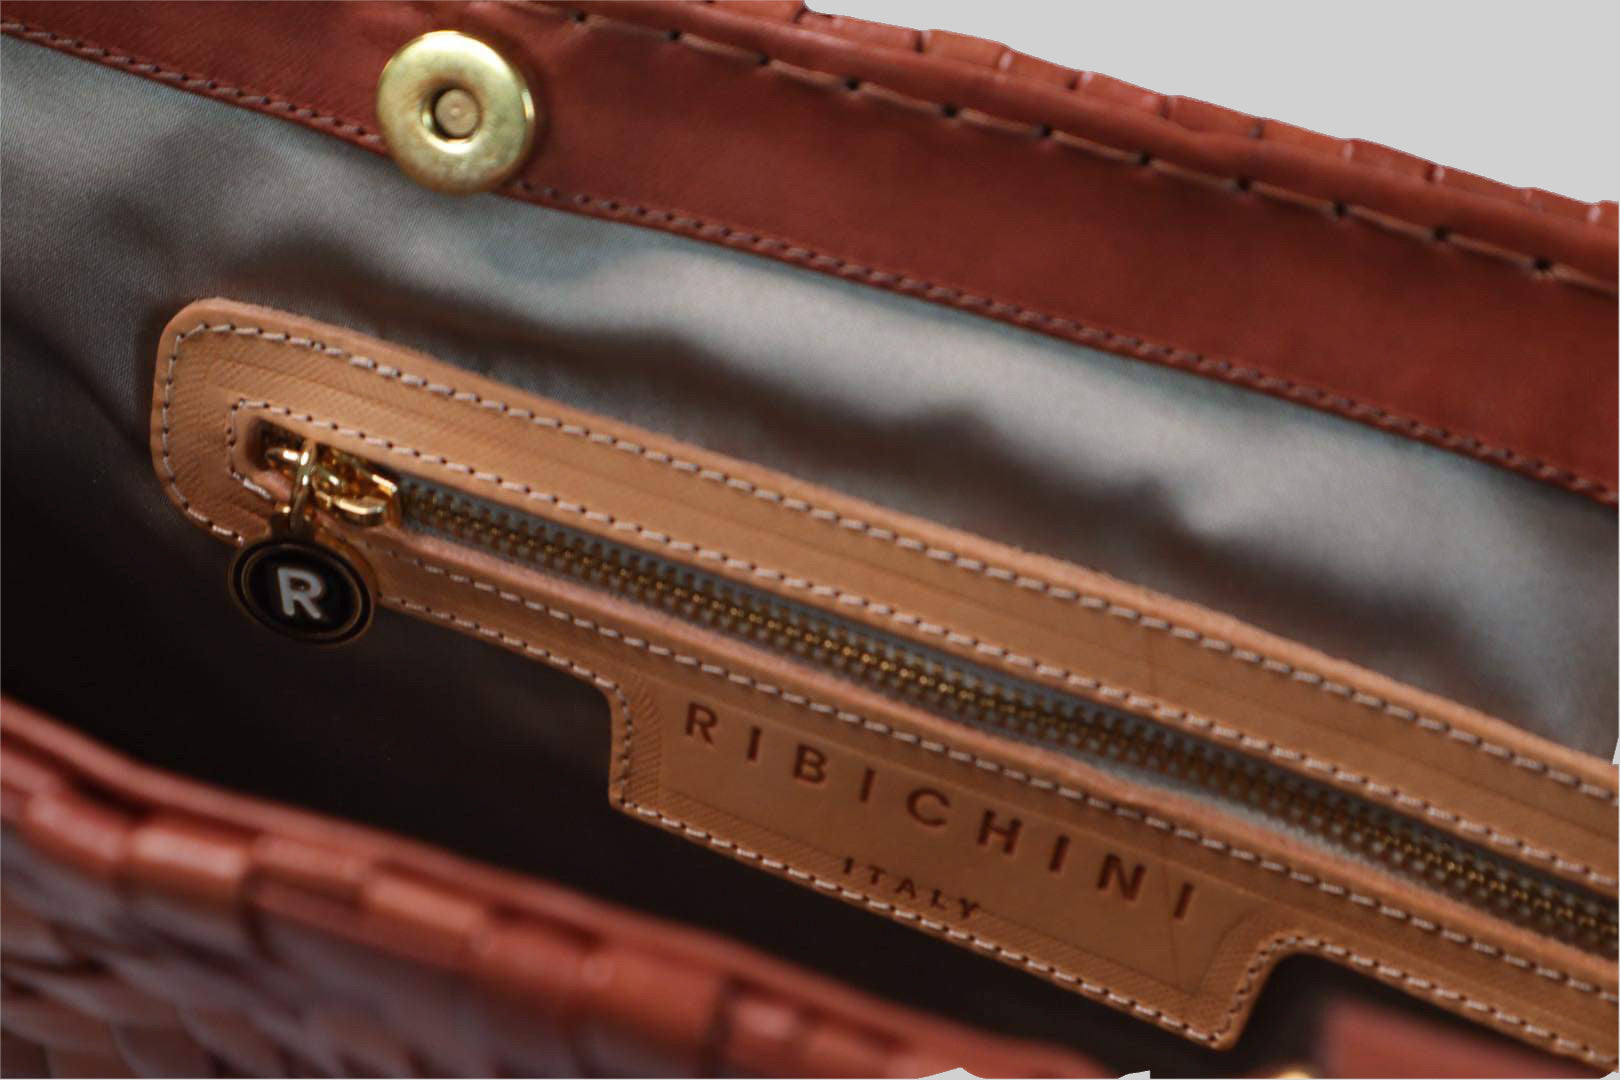 Bildet gir et detaljert inntrykk av innsiden av Ribichini Safari-vesken i cognacfarge. Med en gullfarget glidelåslomme og den ikoniske R-logoen, kombinerer den praktisk funksjonalitet med elegant design.